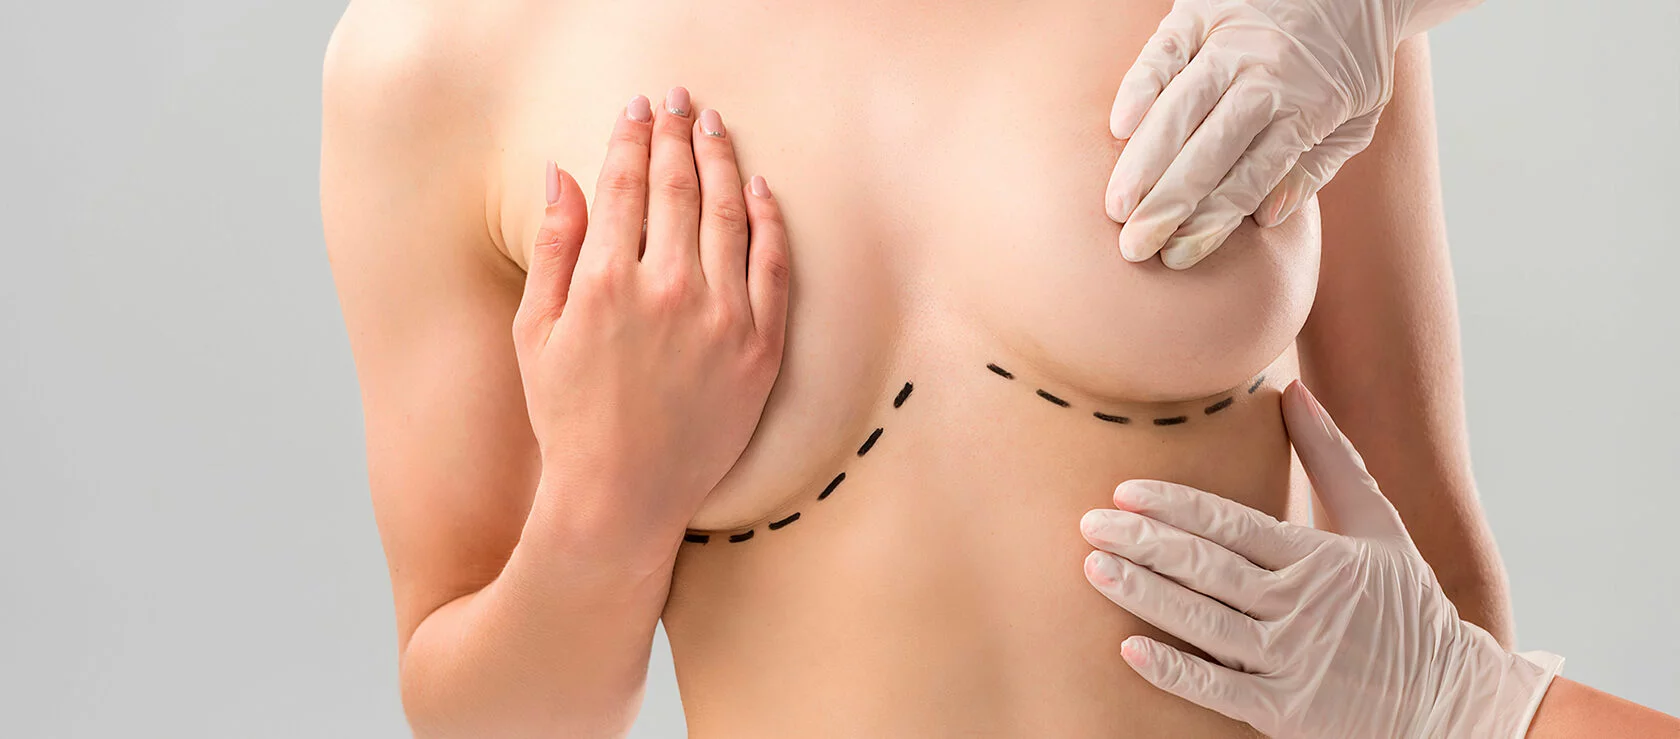 10 способов увеличить грудь без операции